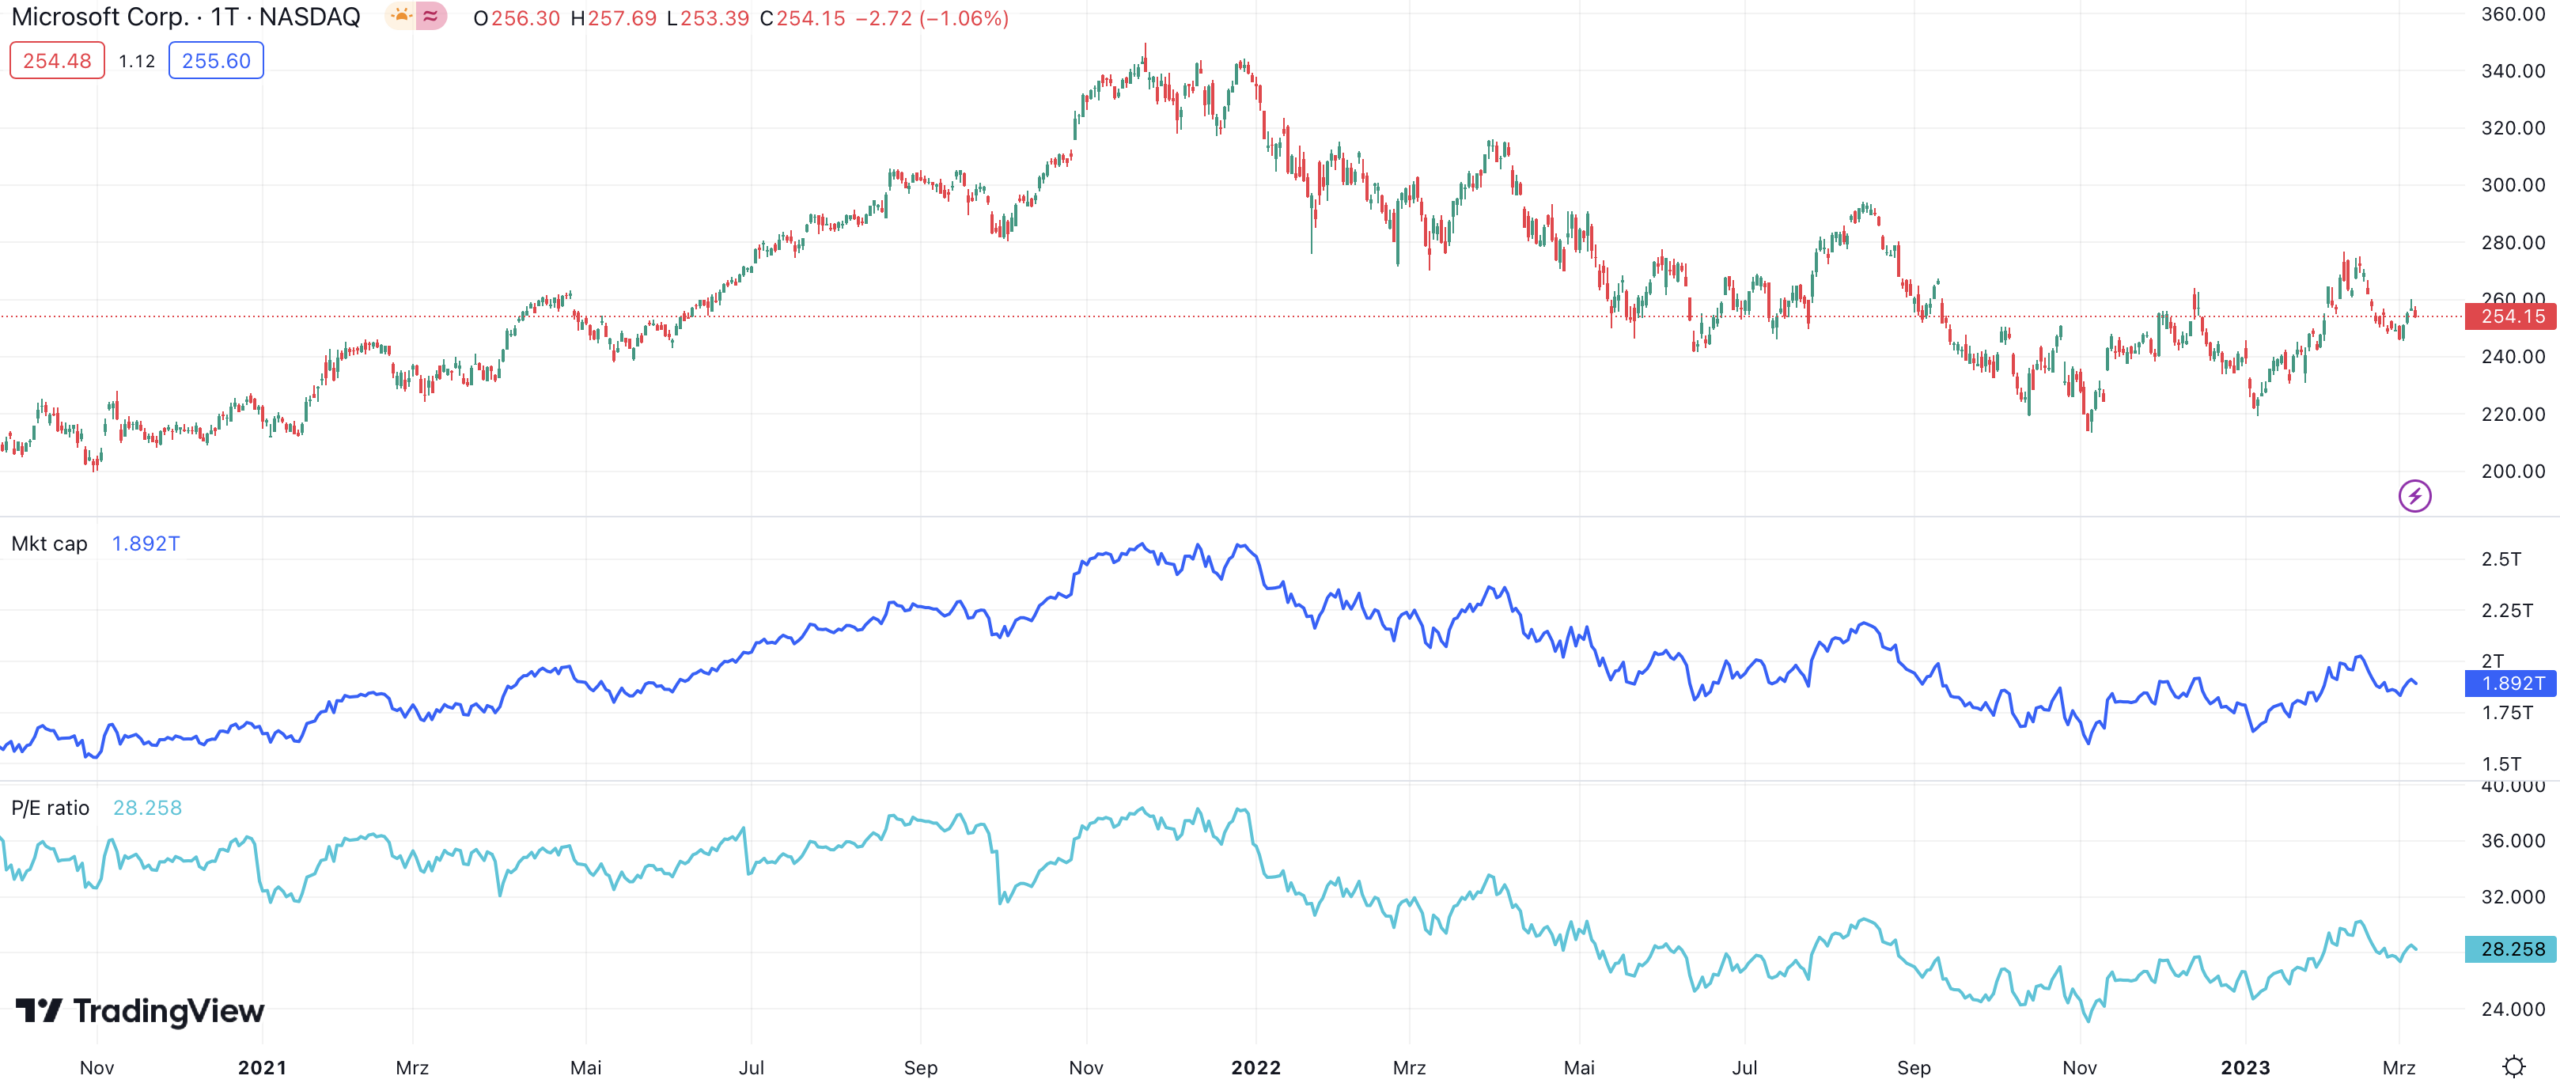 Marktkapitalisierung und KGV (P/E ratio) von Microsoft im Chart bei Trading View